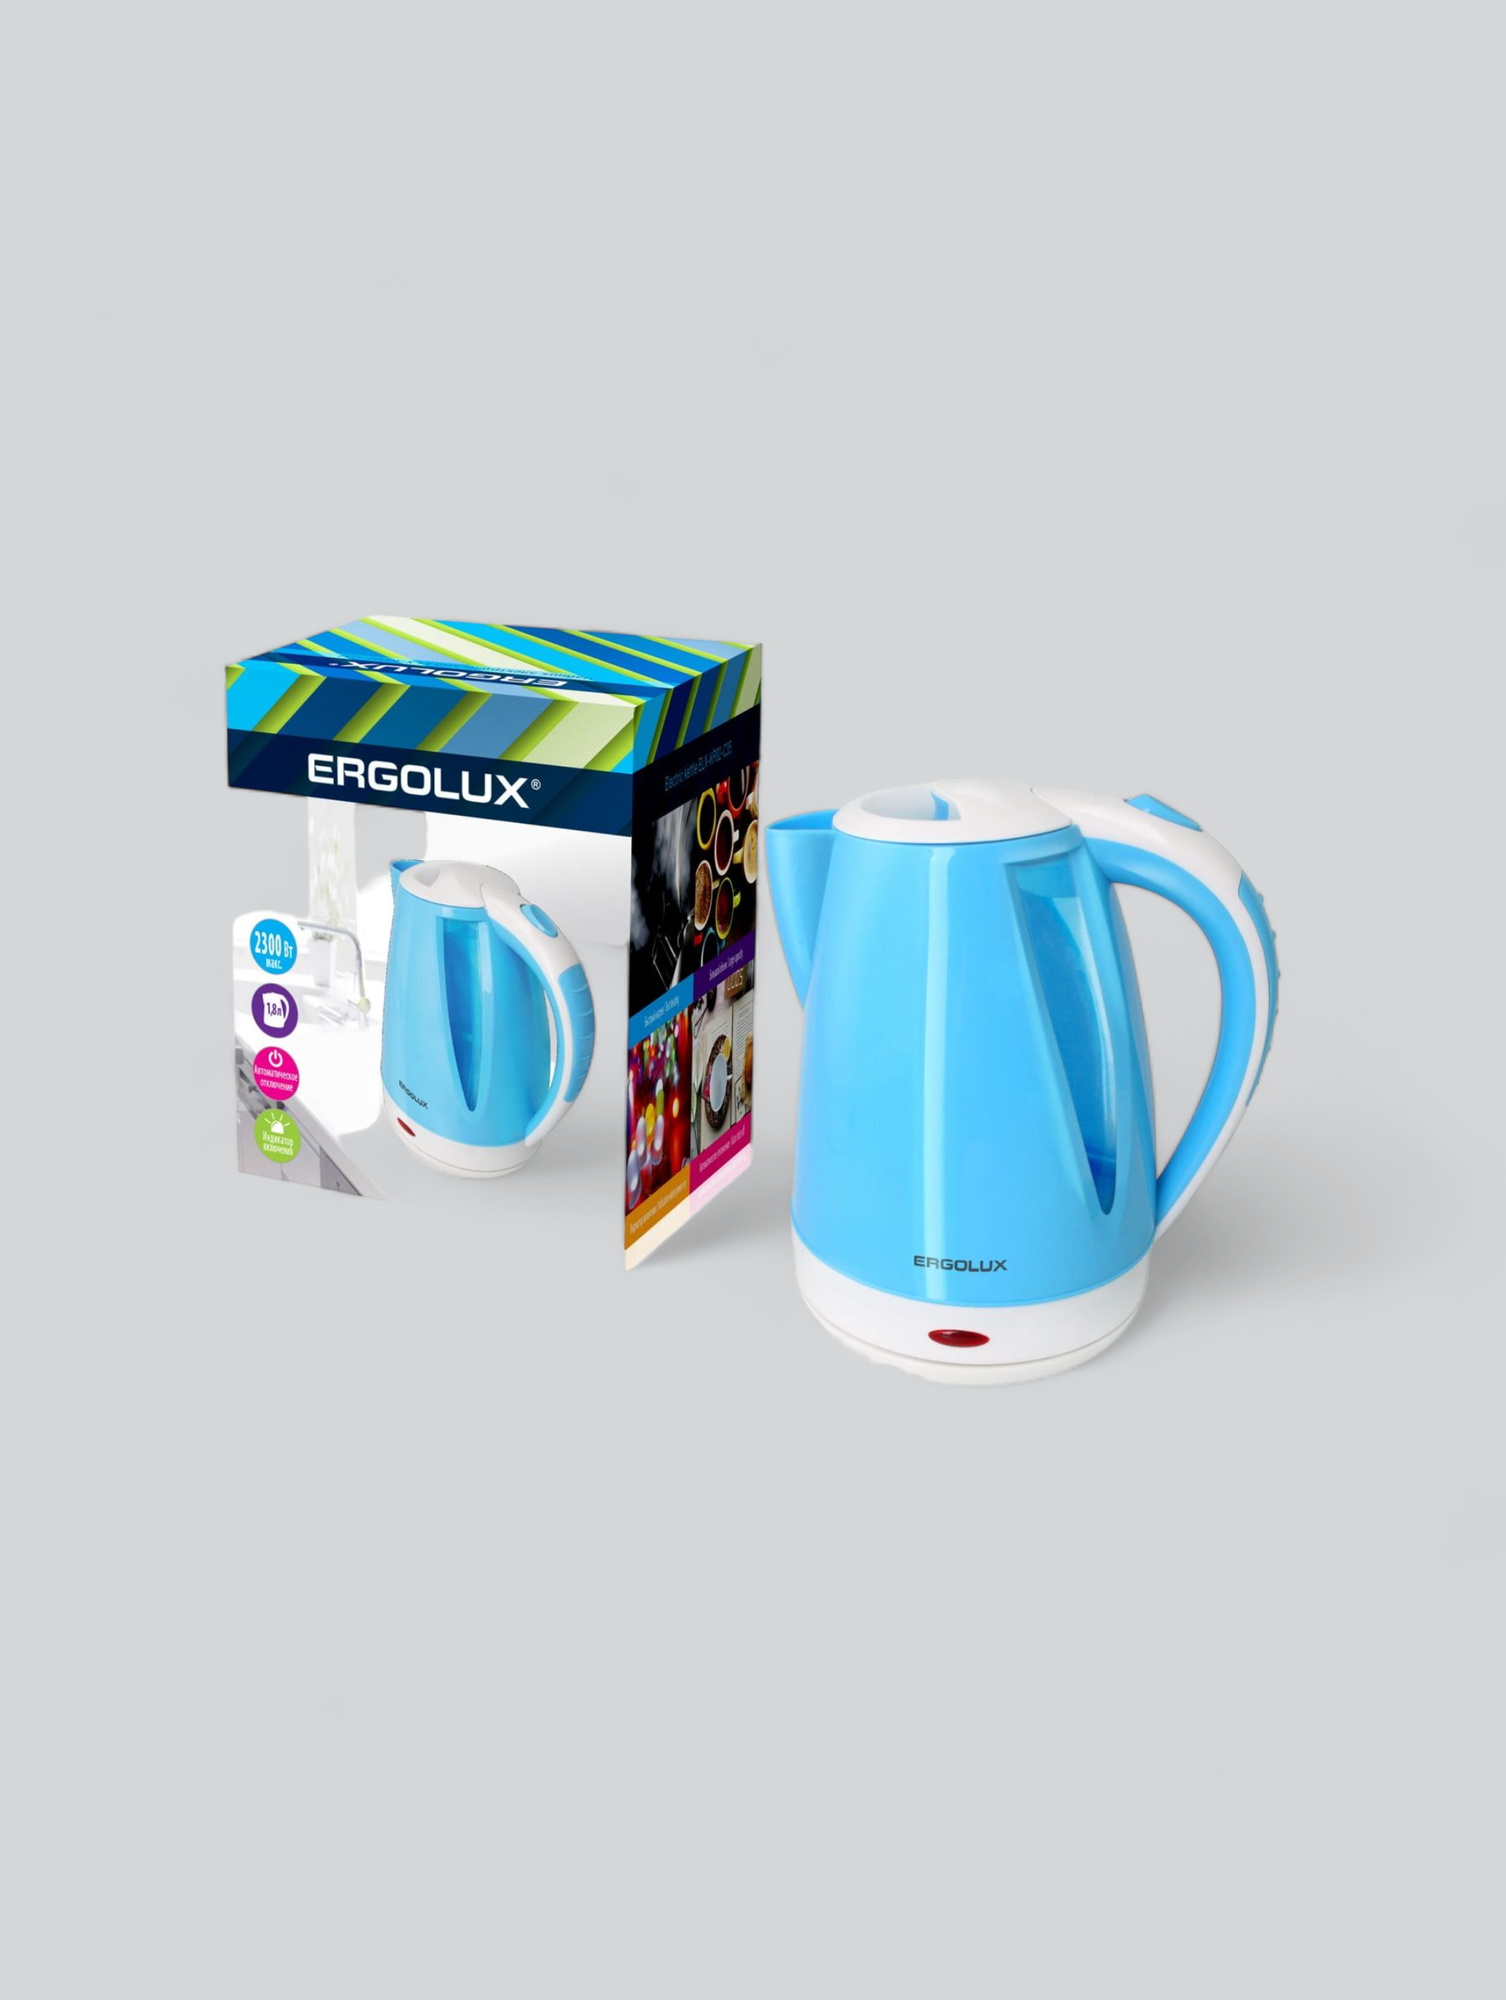 ERGOLUX ELX-KР02-C35 голубой/белый чайник пластиковый 1,8л 160-250В 1500-2300Вт 13118